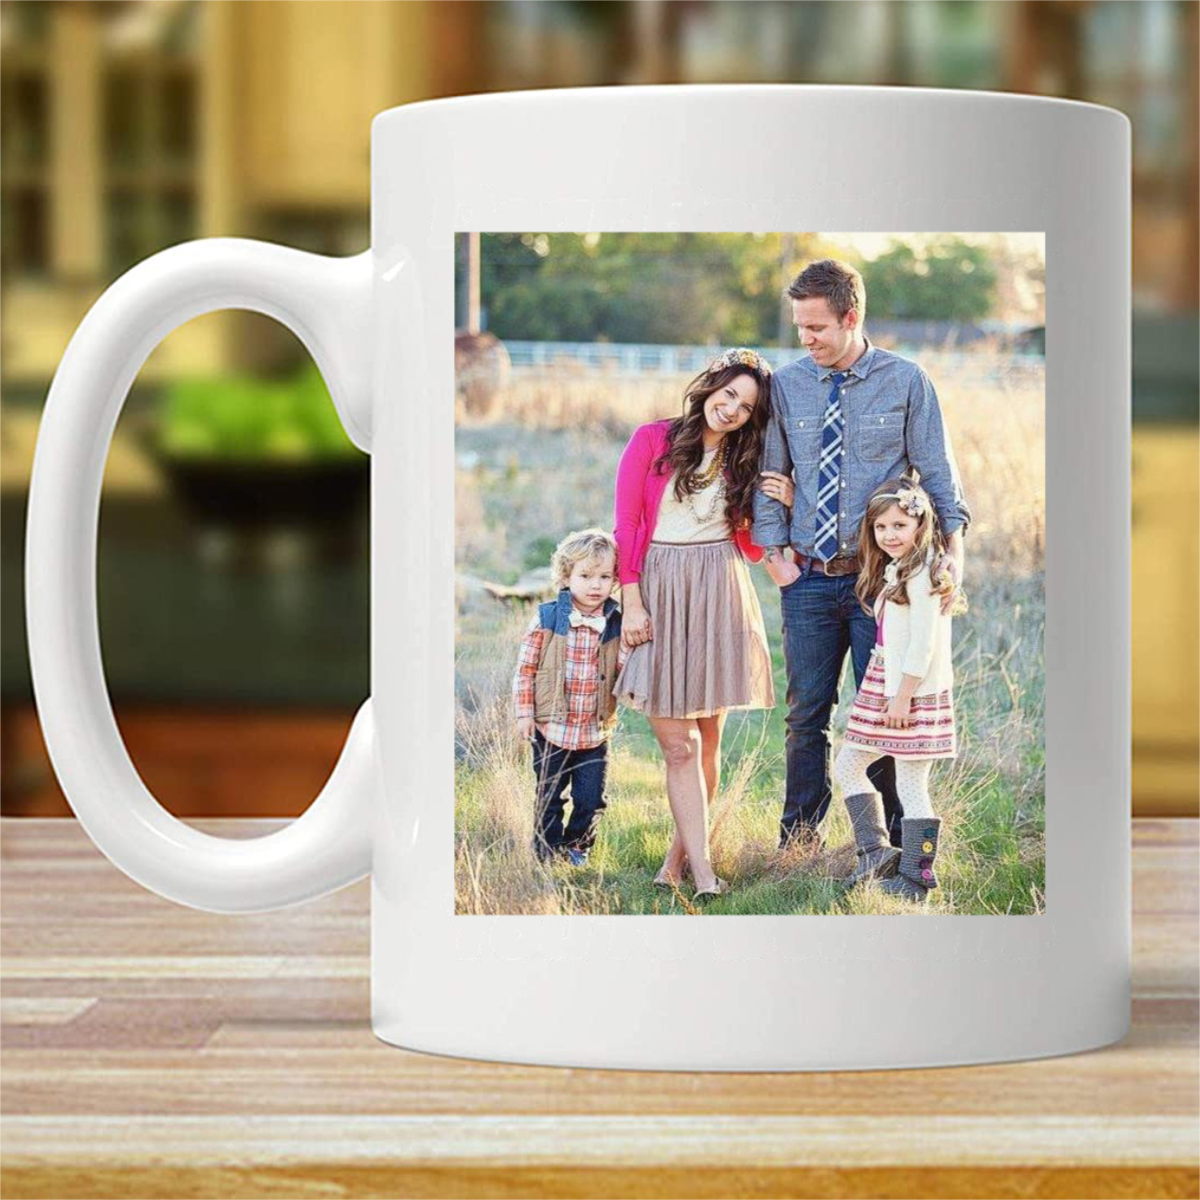 Custom Photo, Personalized Photo Mug (Double-sided Printing)